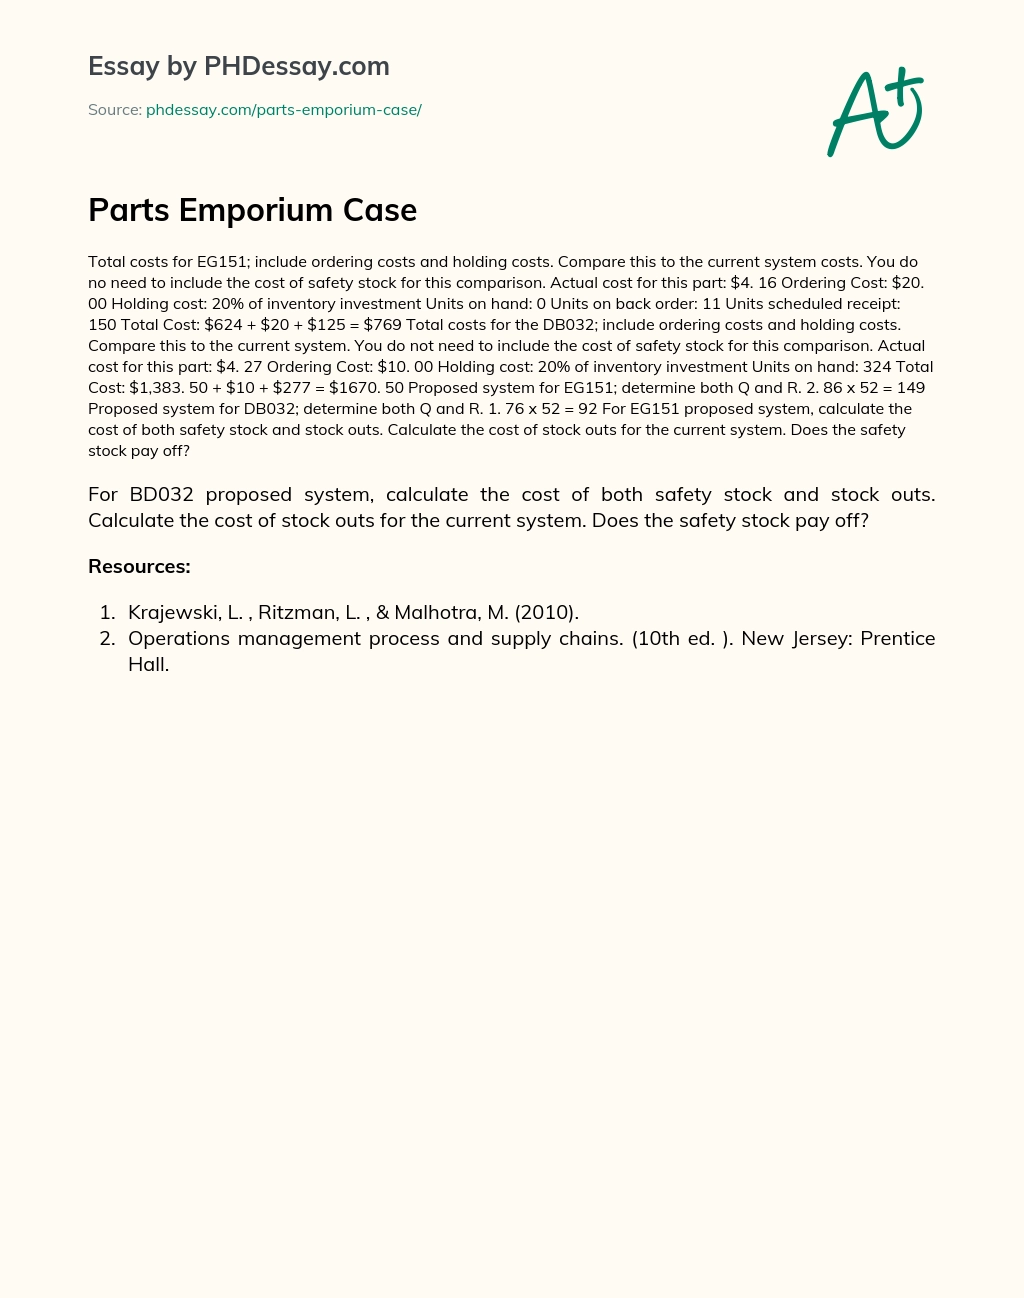 Parts Emporium Case essay